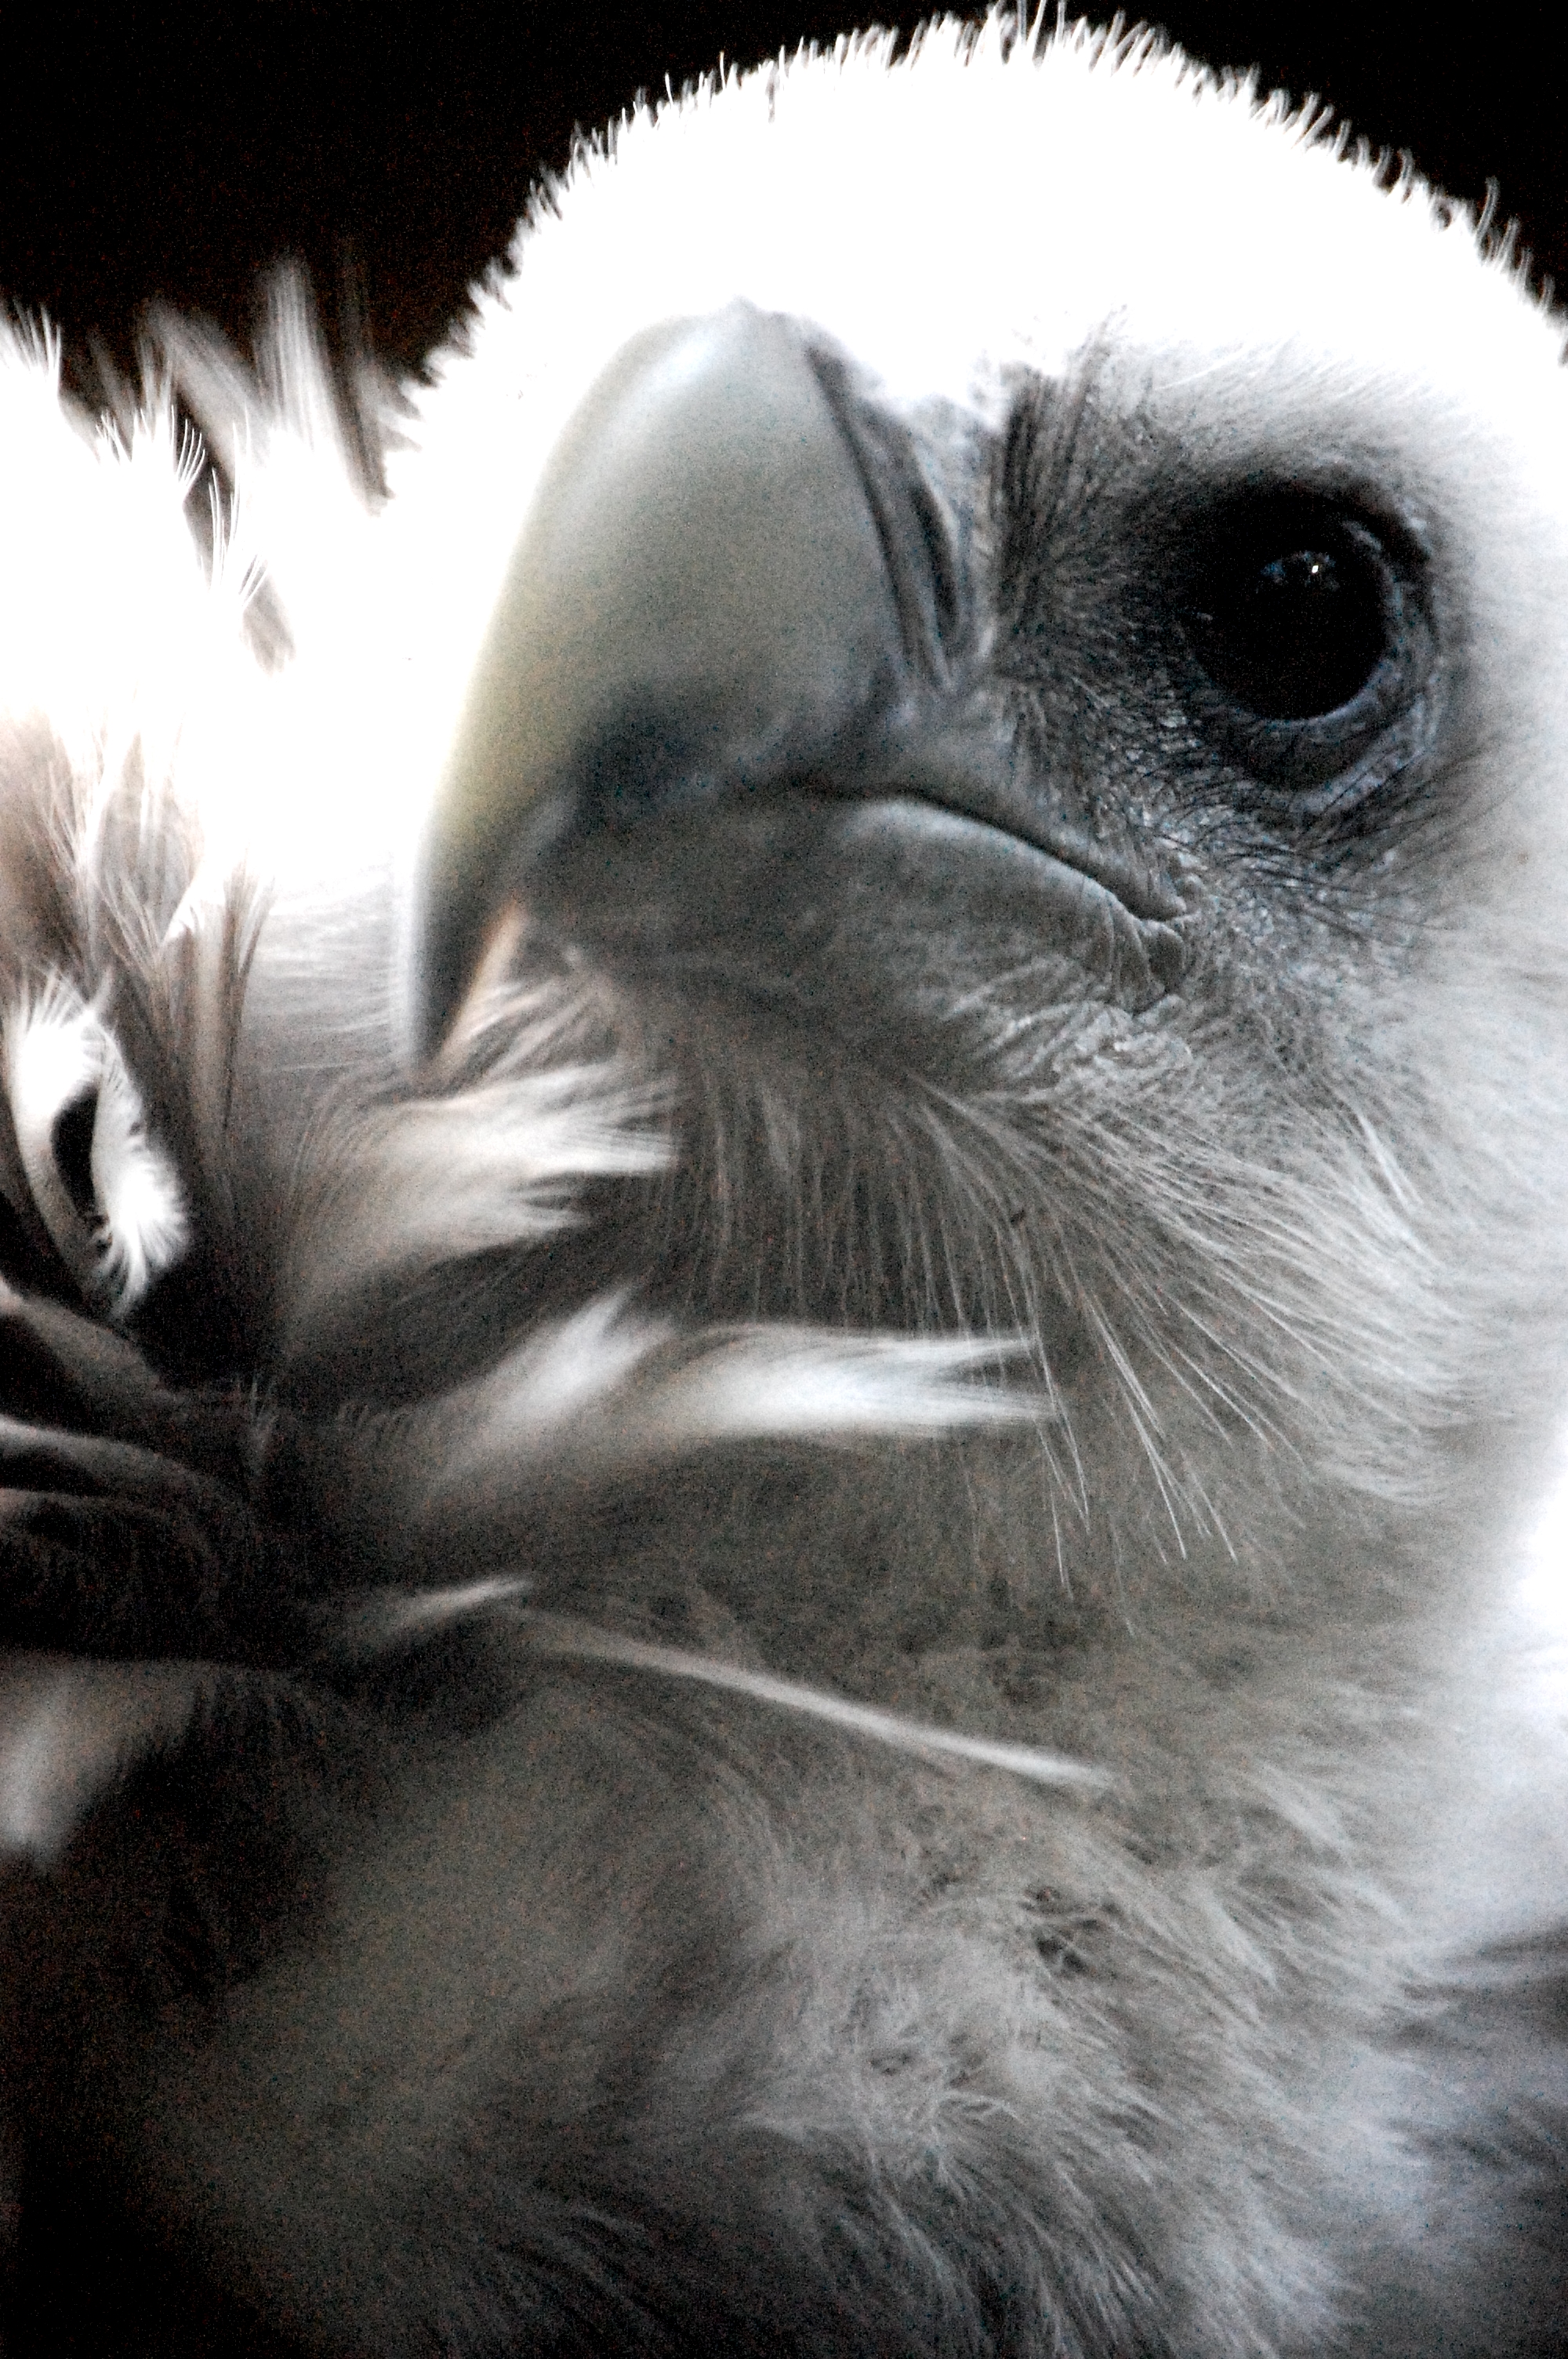 Free photo: Himalayan Vulture - Beak, Bird, Eye - Free Download - Jooinn